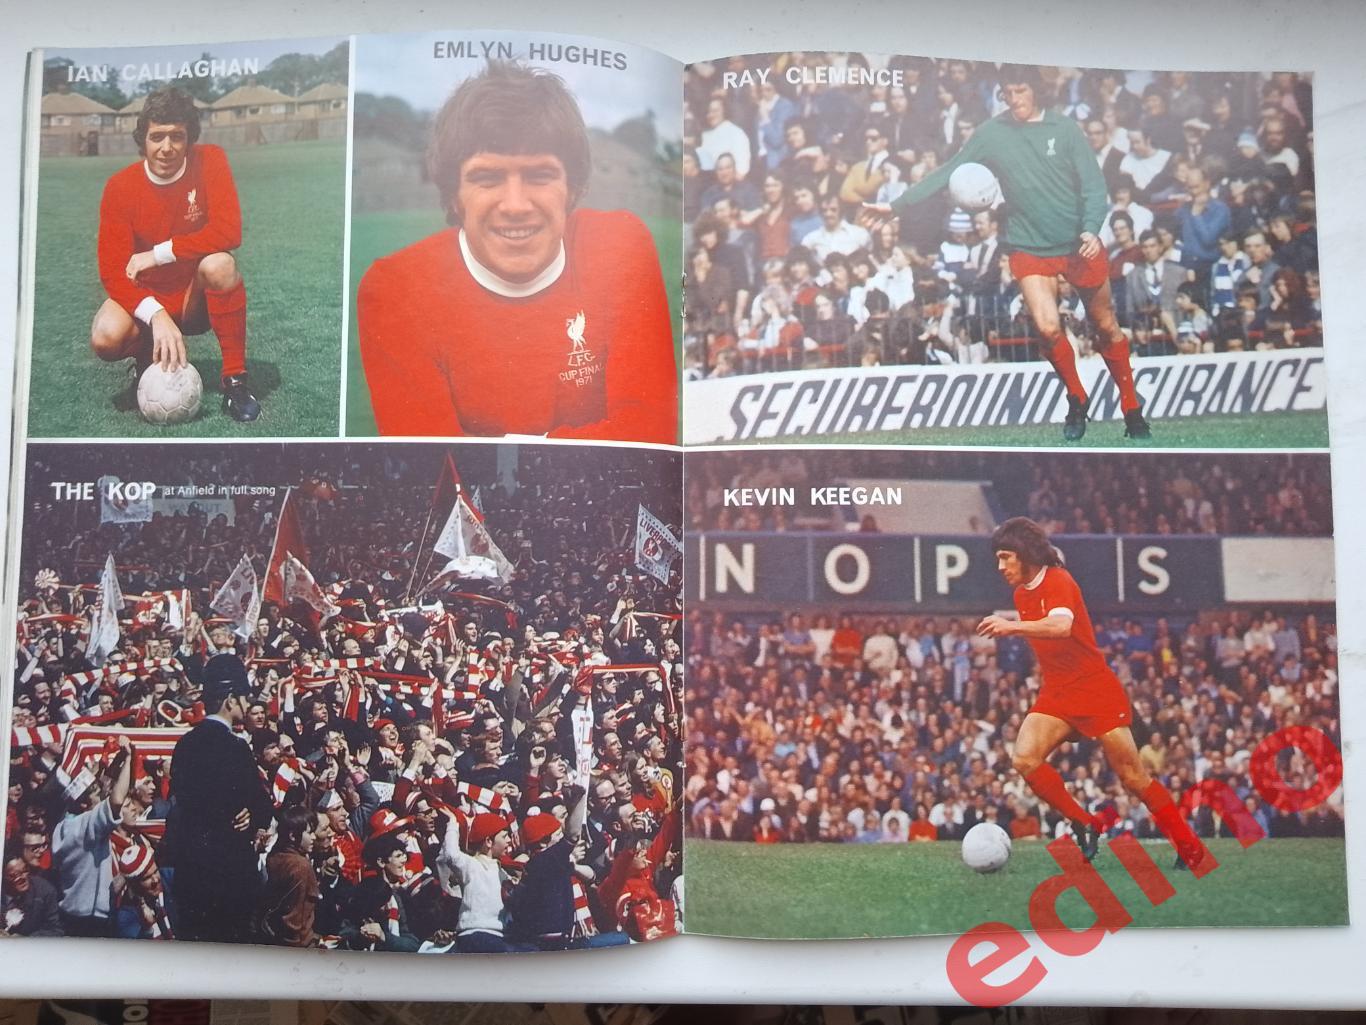 Football As News1974г. Ф. К. Мейдстоун/Ливерпуль 2